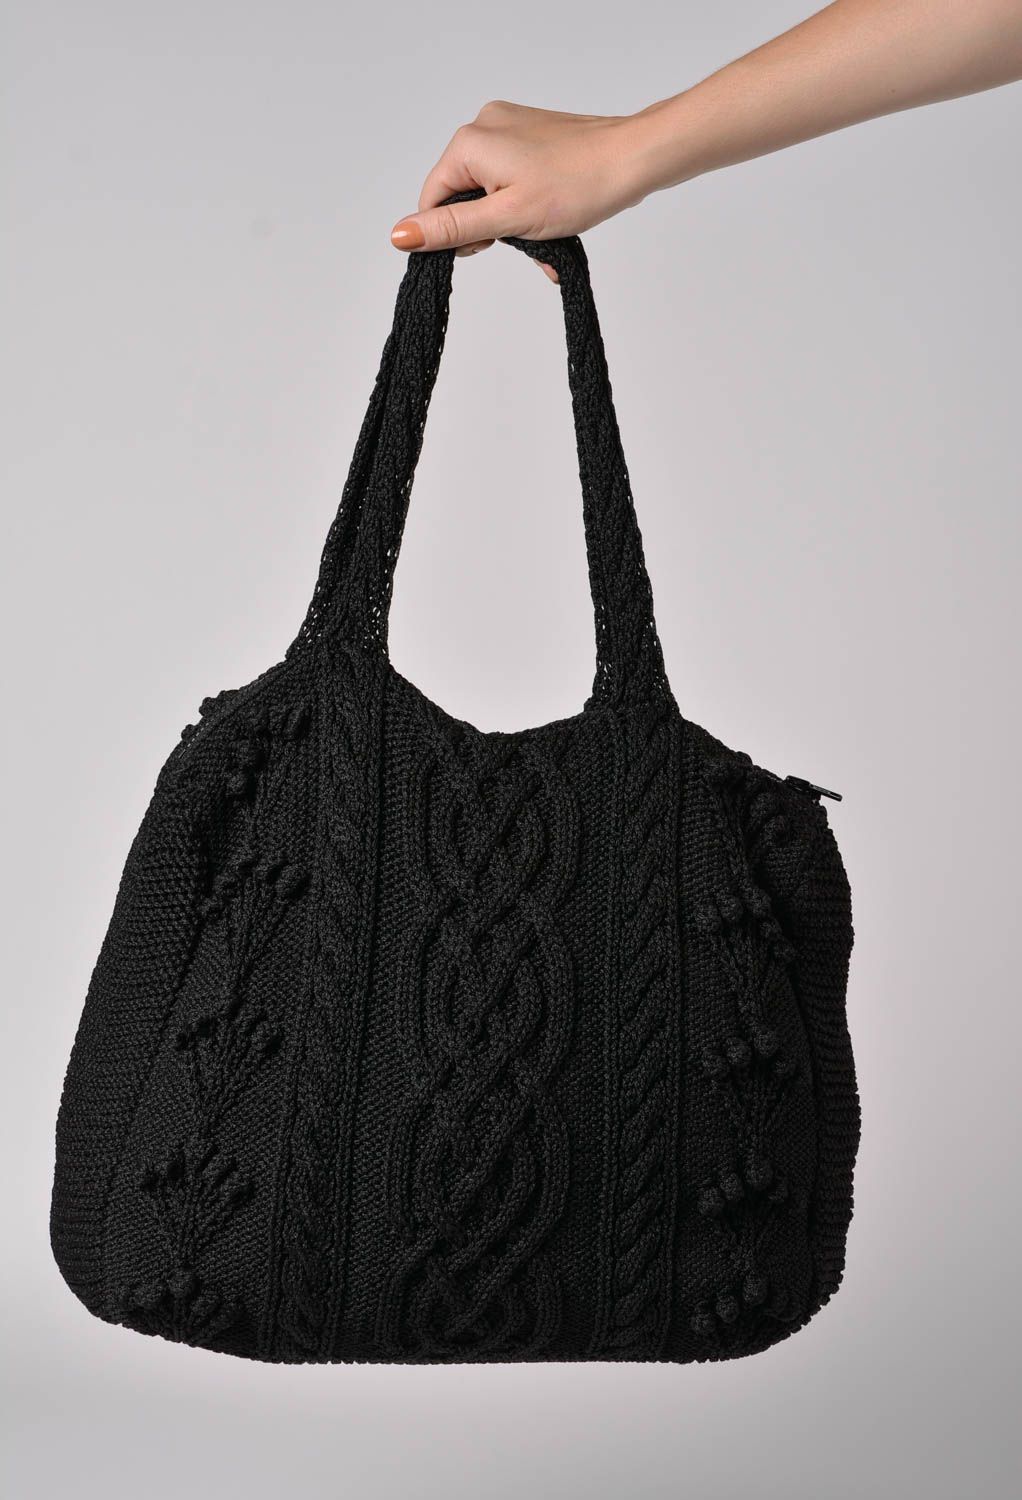 Grand sac à main tricoté avec des aiguilles fait main noir pour hiver deux anses photo 2